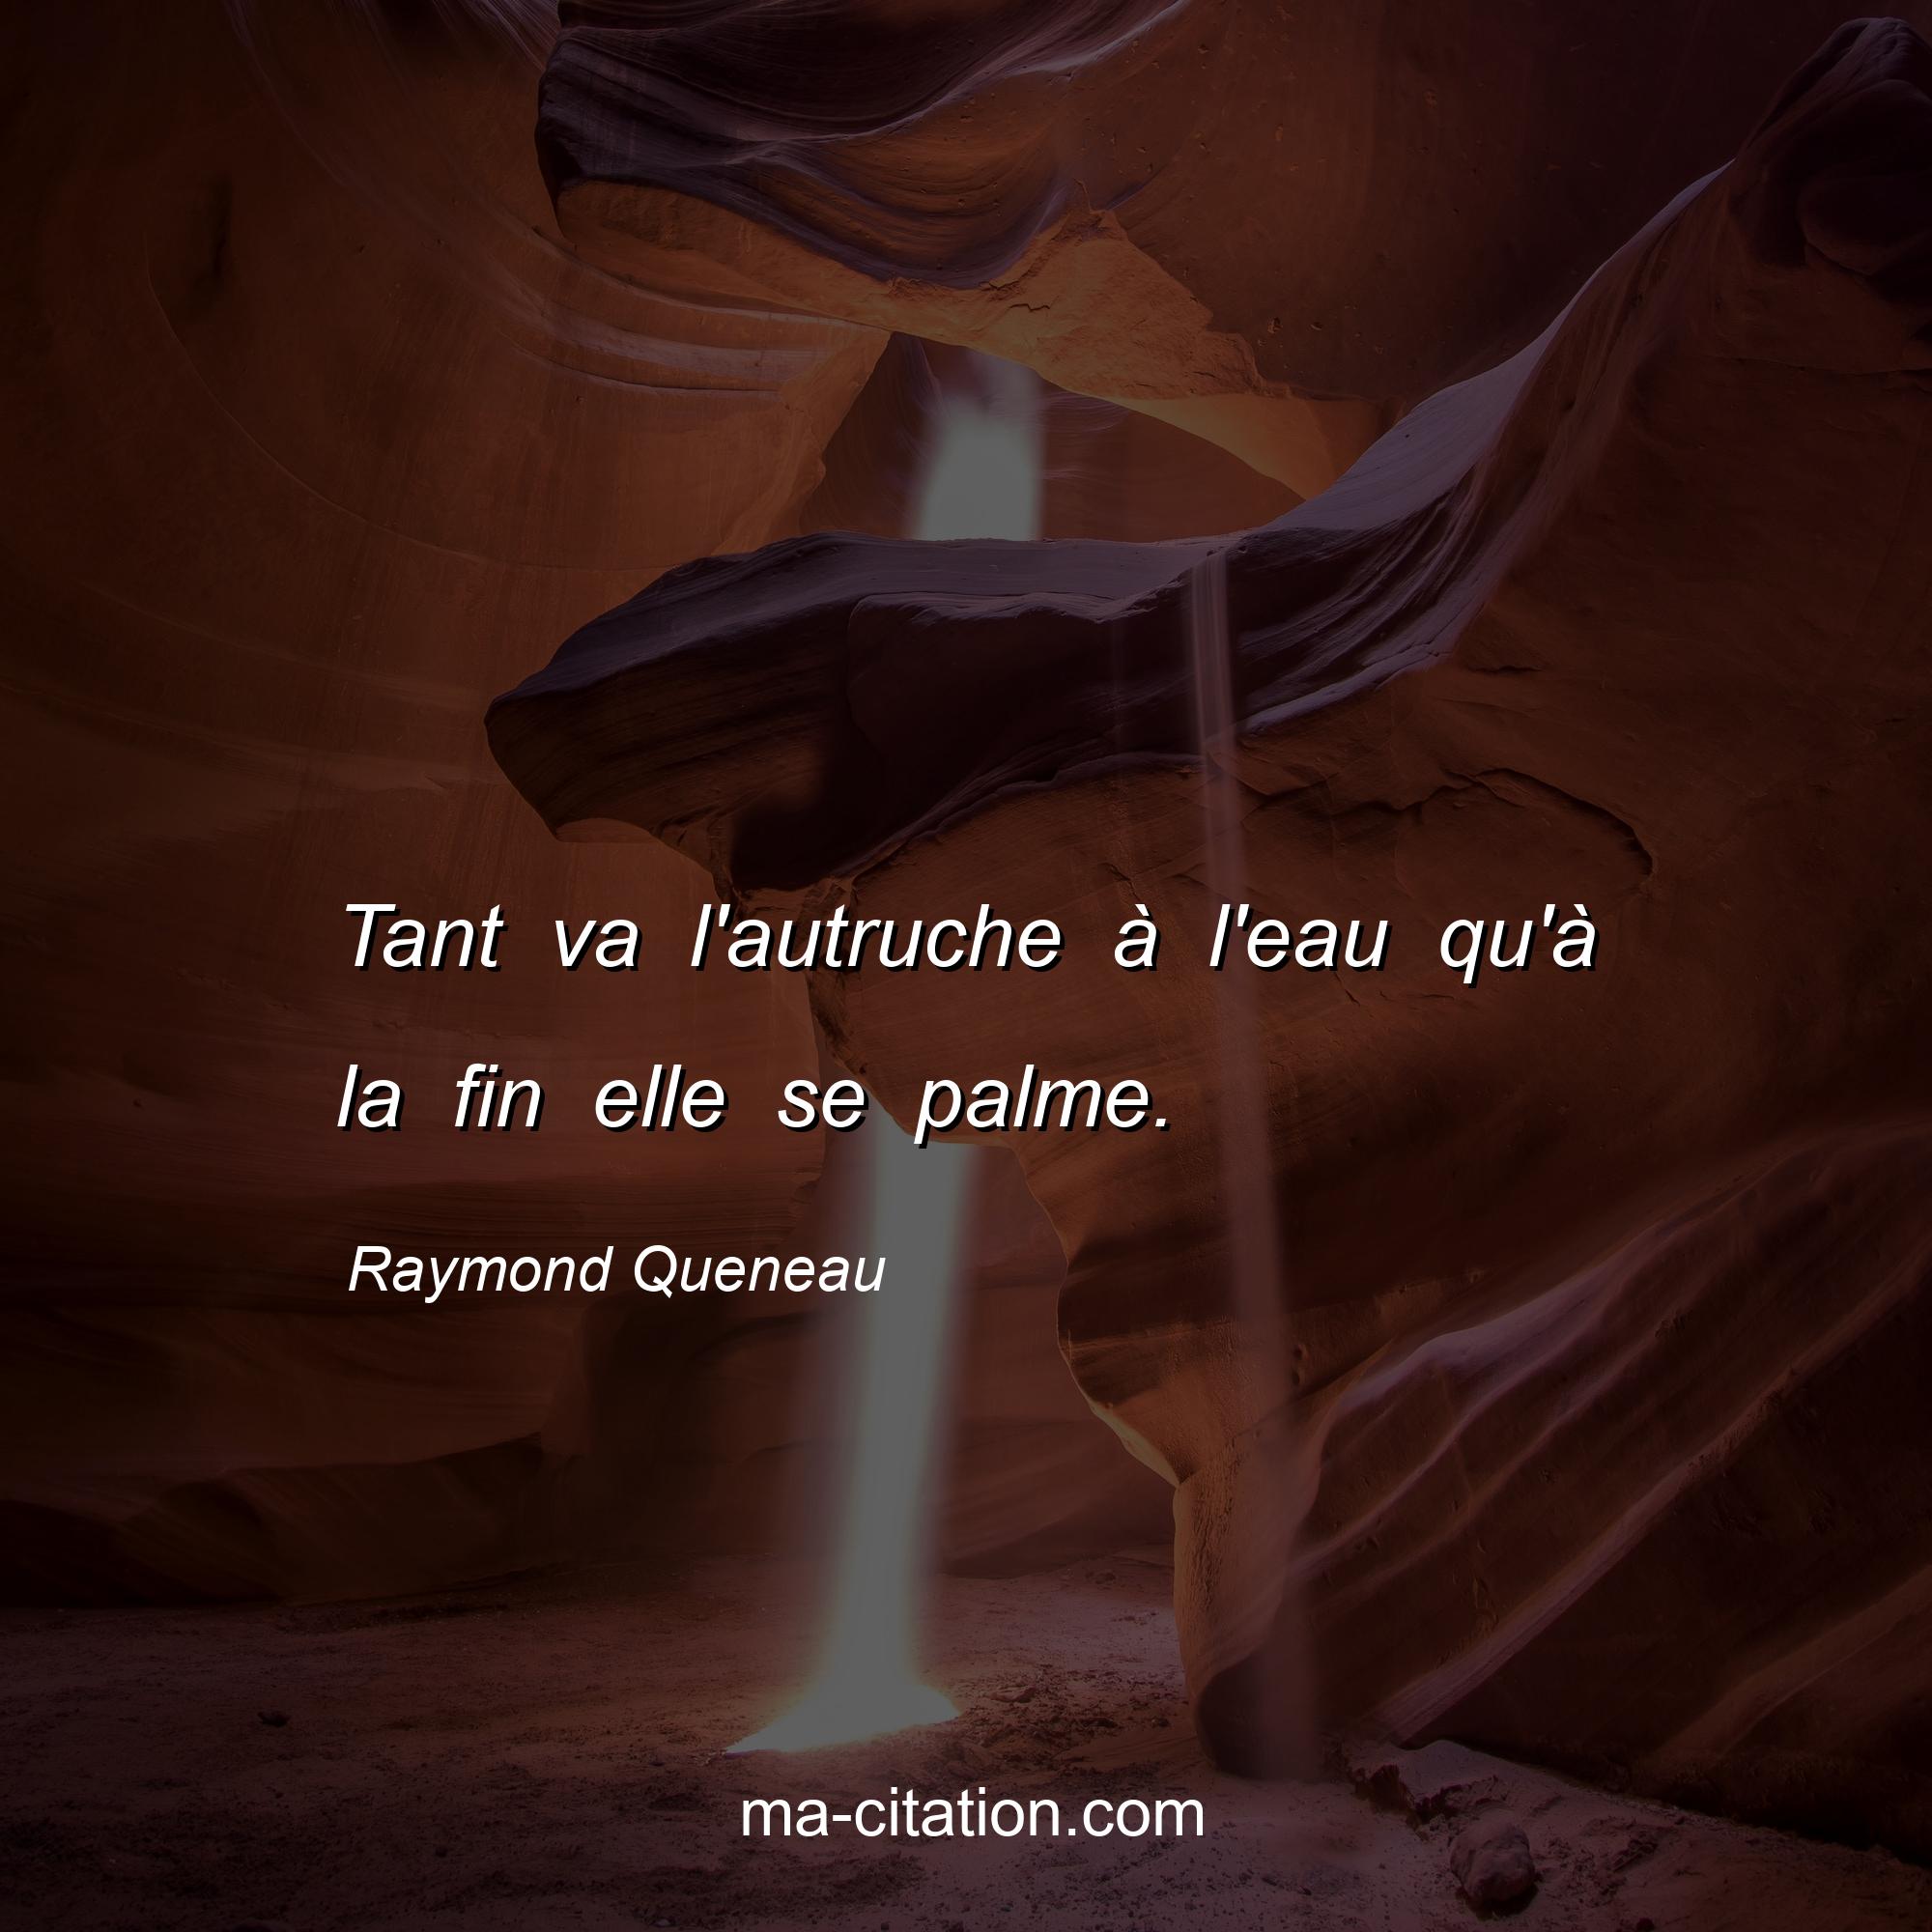 Raymond Queneau : Tant va l'autruche à l'eau qu'à la fin elle se palme.